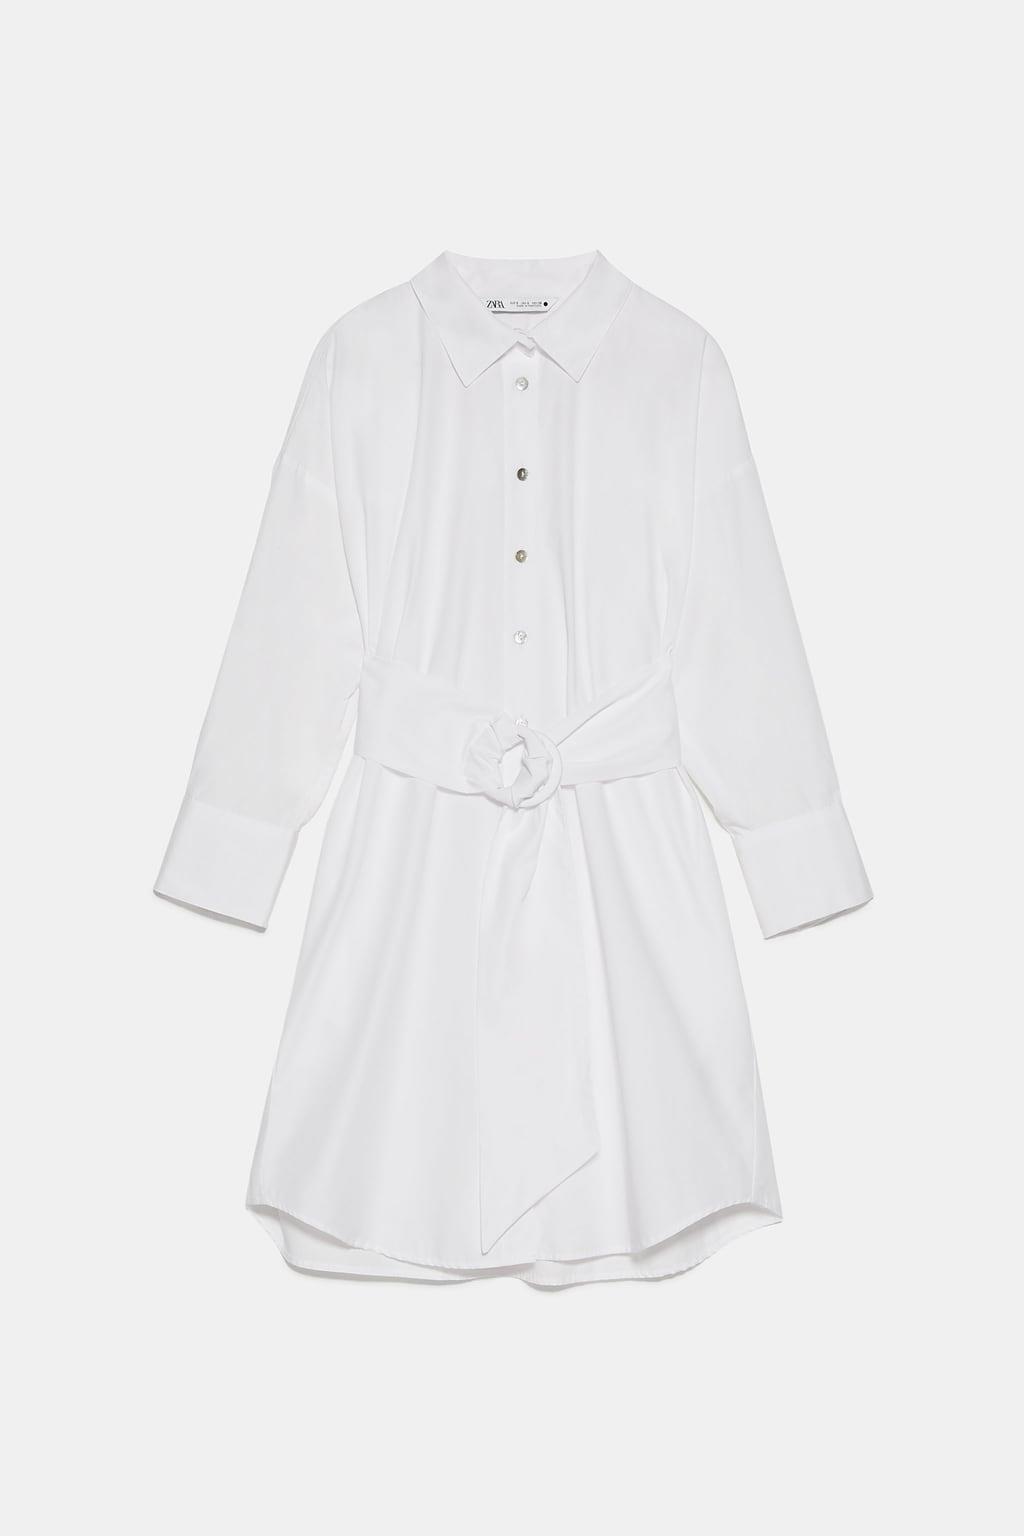 El vestido blanco de Zara que está punto de agotarse 5 opciones low cost